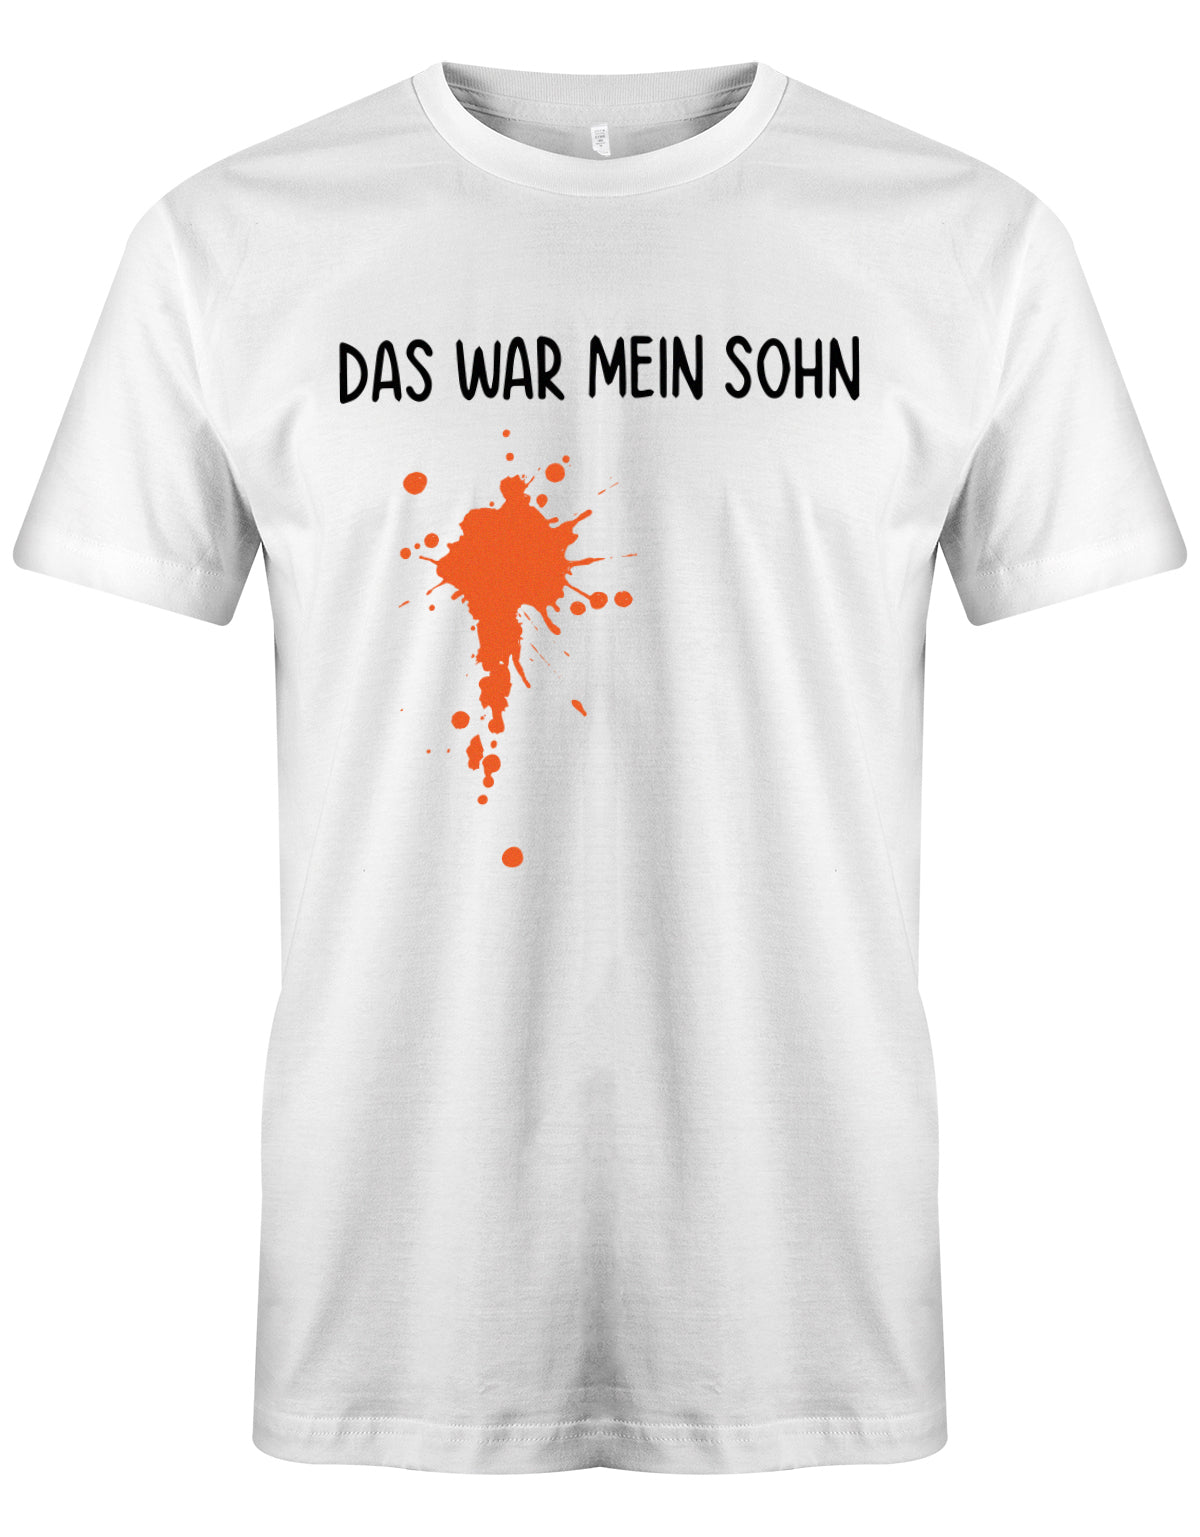 herren-shirt-weissX5vQ0e63dSVXO